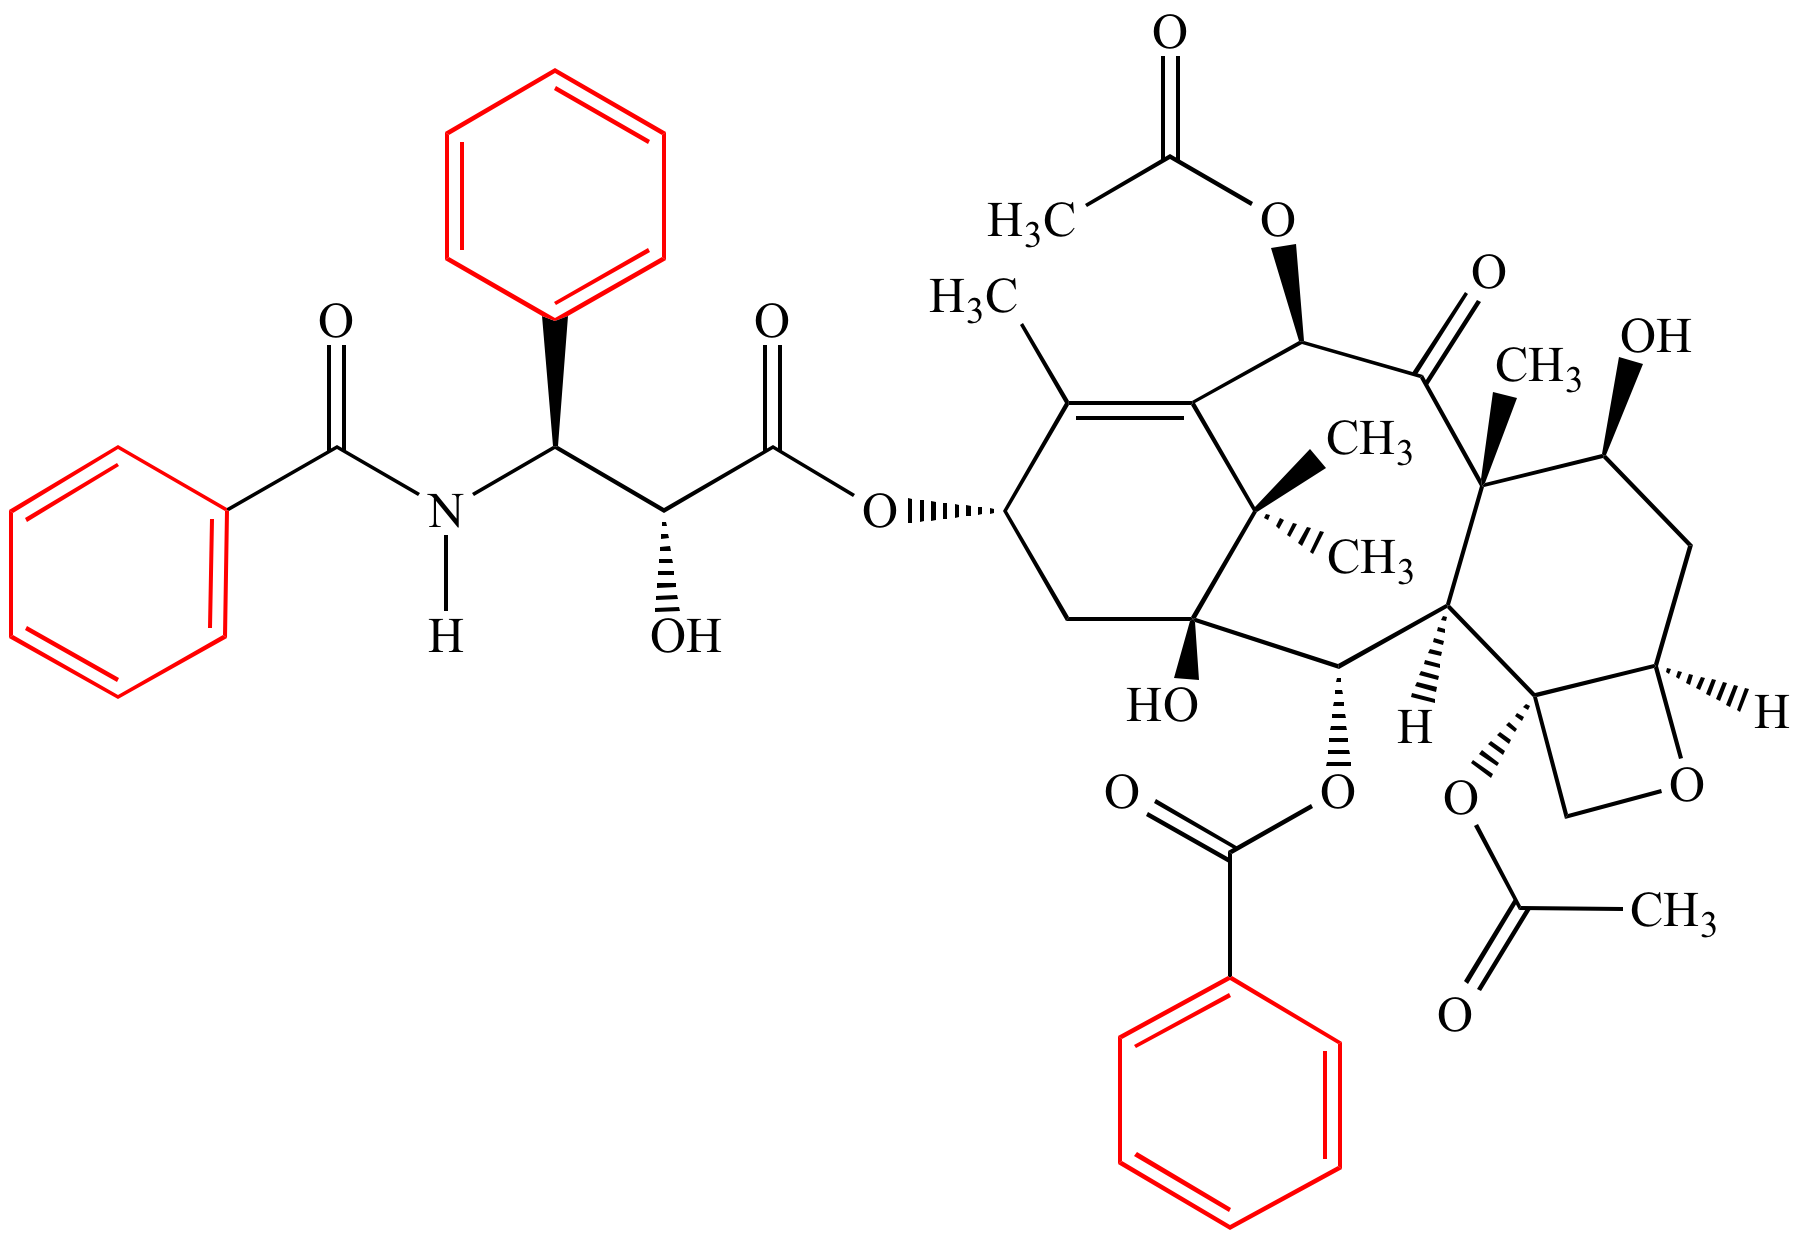 Benzene Chemical